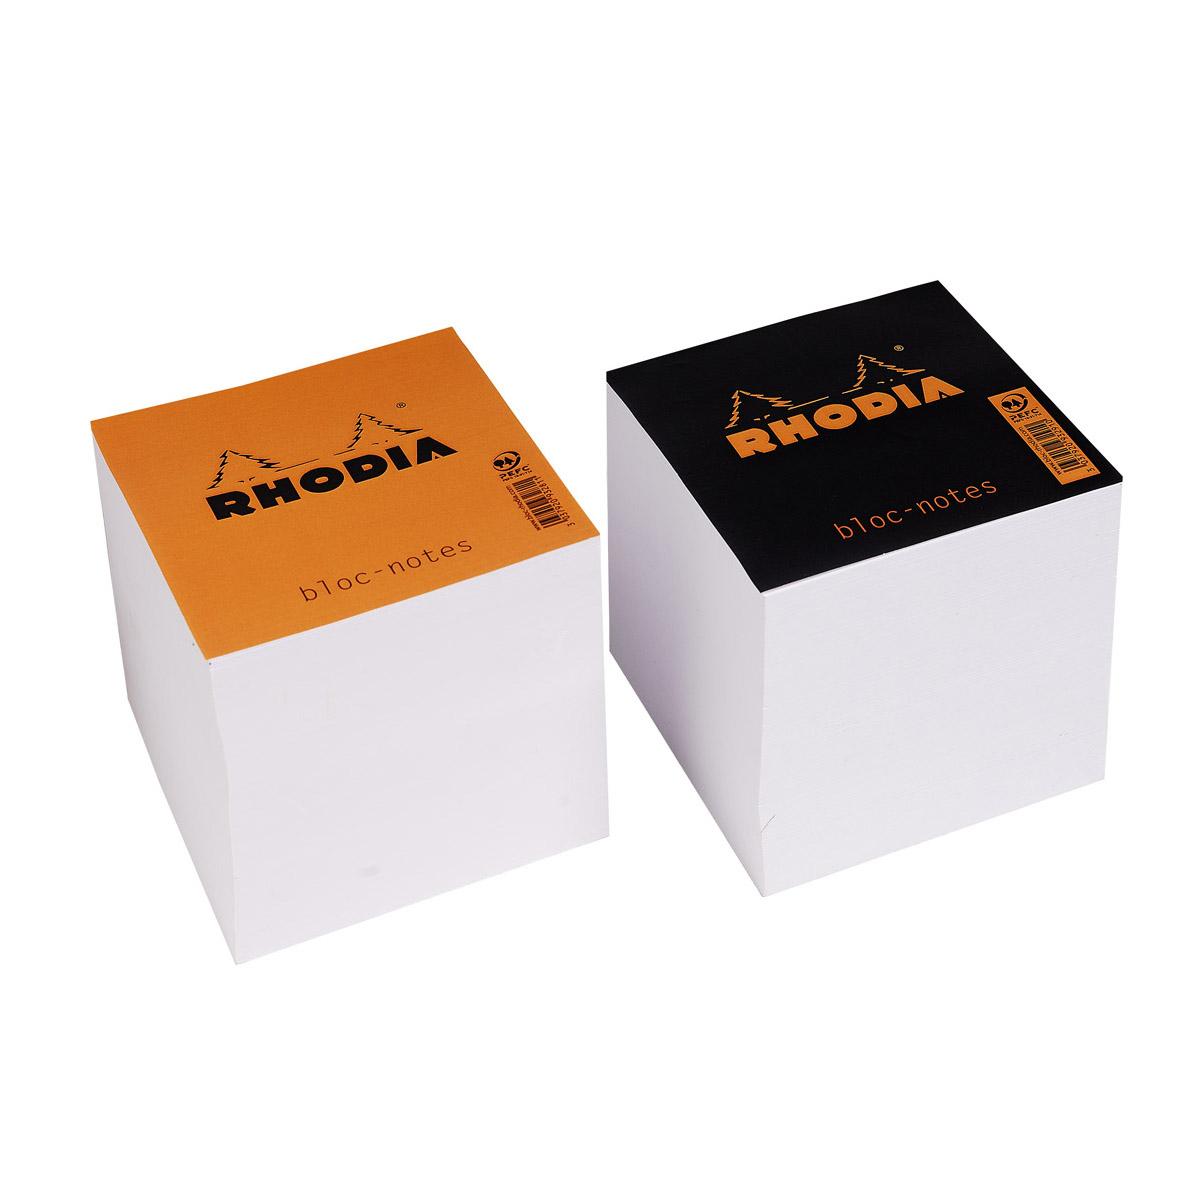 Achat / Vente Rhodia Bloc-notes cube encollé uni 90 x 90 mm, 1 bloc